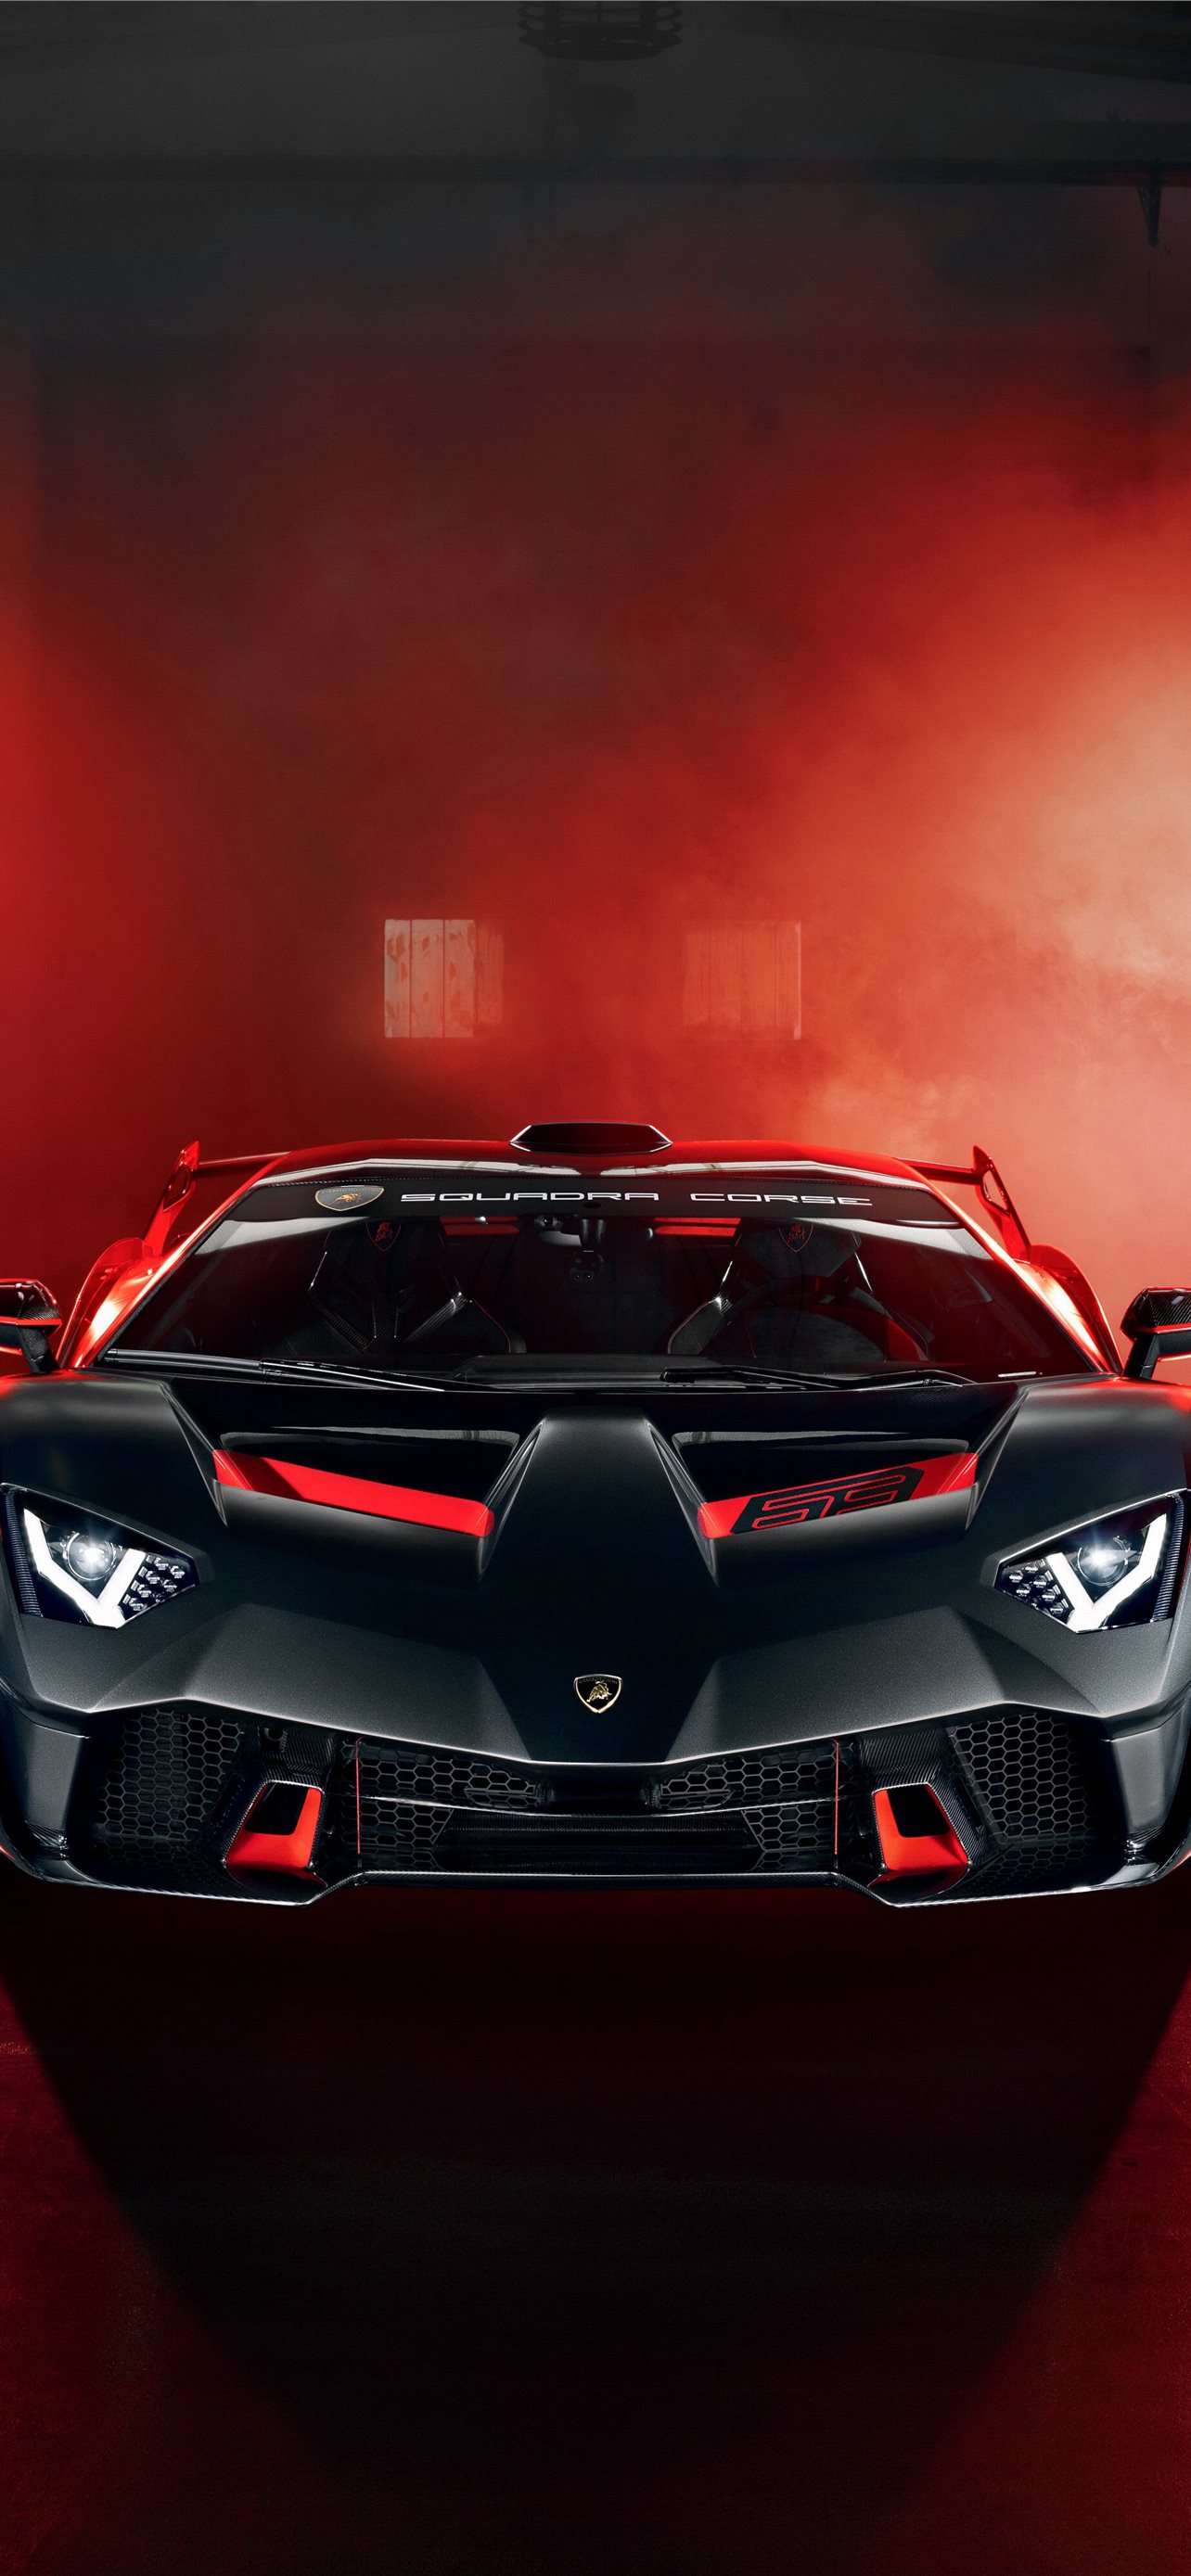 Nếu bạn yêu thích thế giới siêu xe và muốn giữ một màn hình máy tính độc đáo, kích thích trí tưởng tượng, thì hãy cắm mắt vào bức ảnh hình nền siêu xe Lamborghini này. Bạn sẽ thấy sự phong phú và vẻ đẹp của dòng siêu xe huyền thoại này.